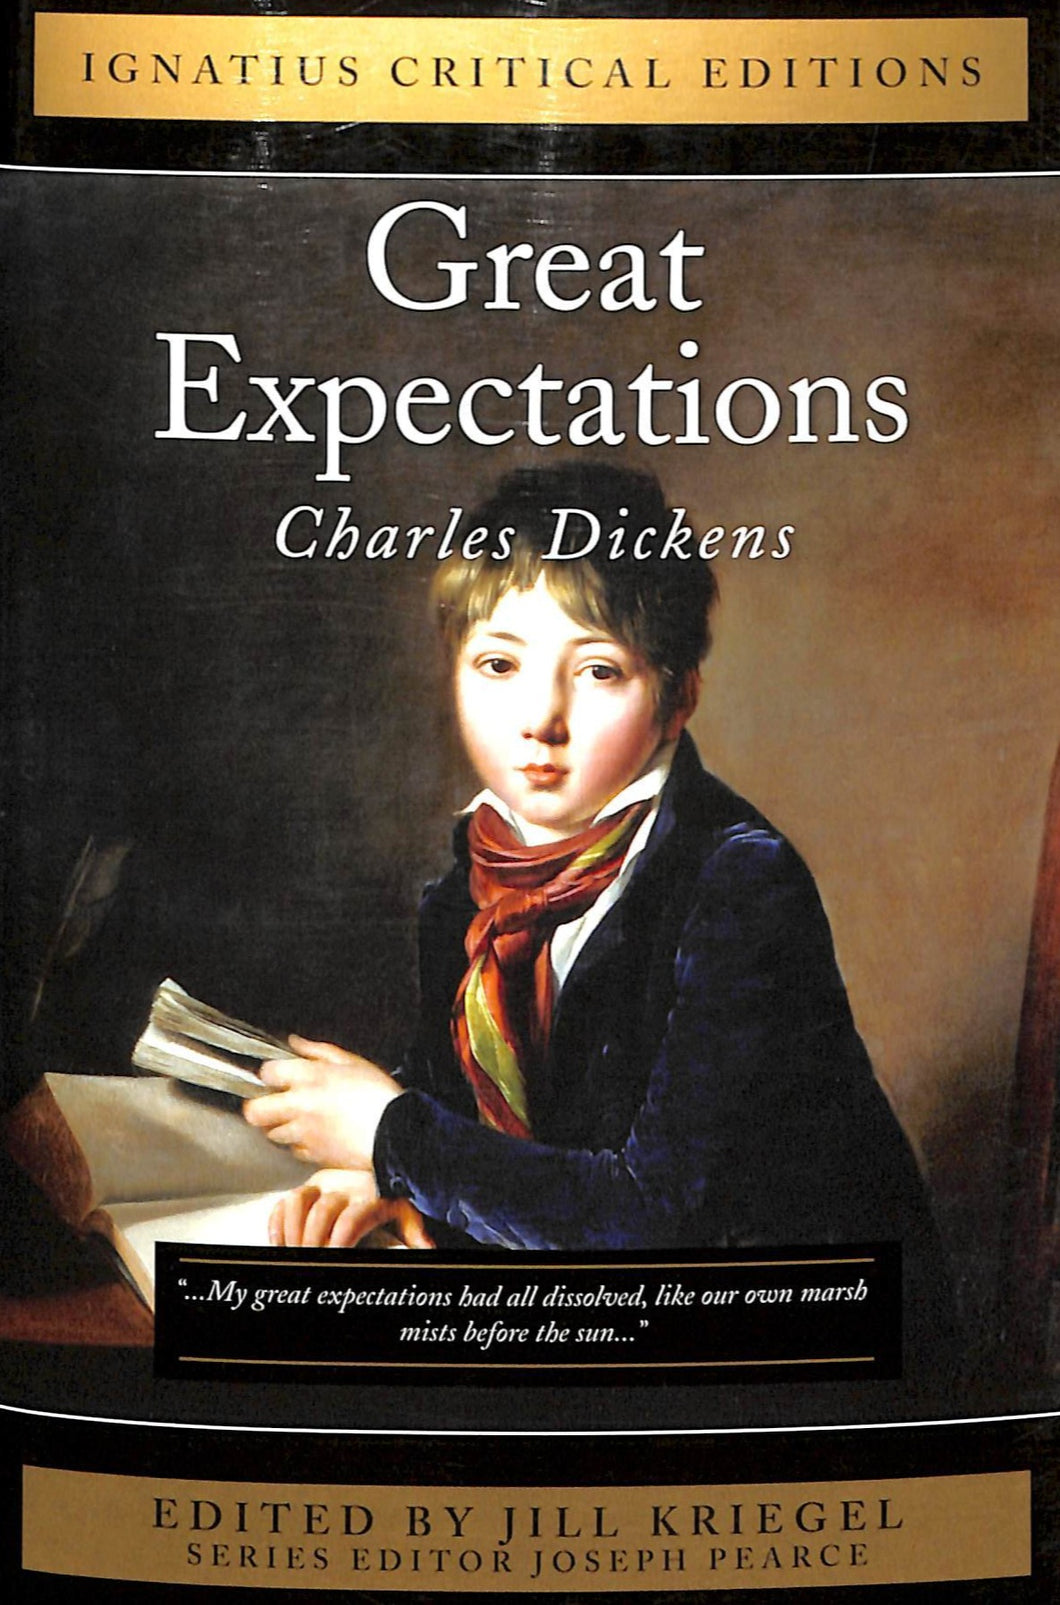 Great Expectations: Ignatius Critical Edition